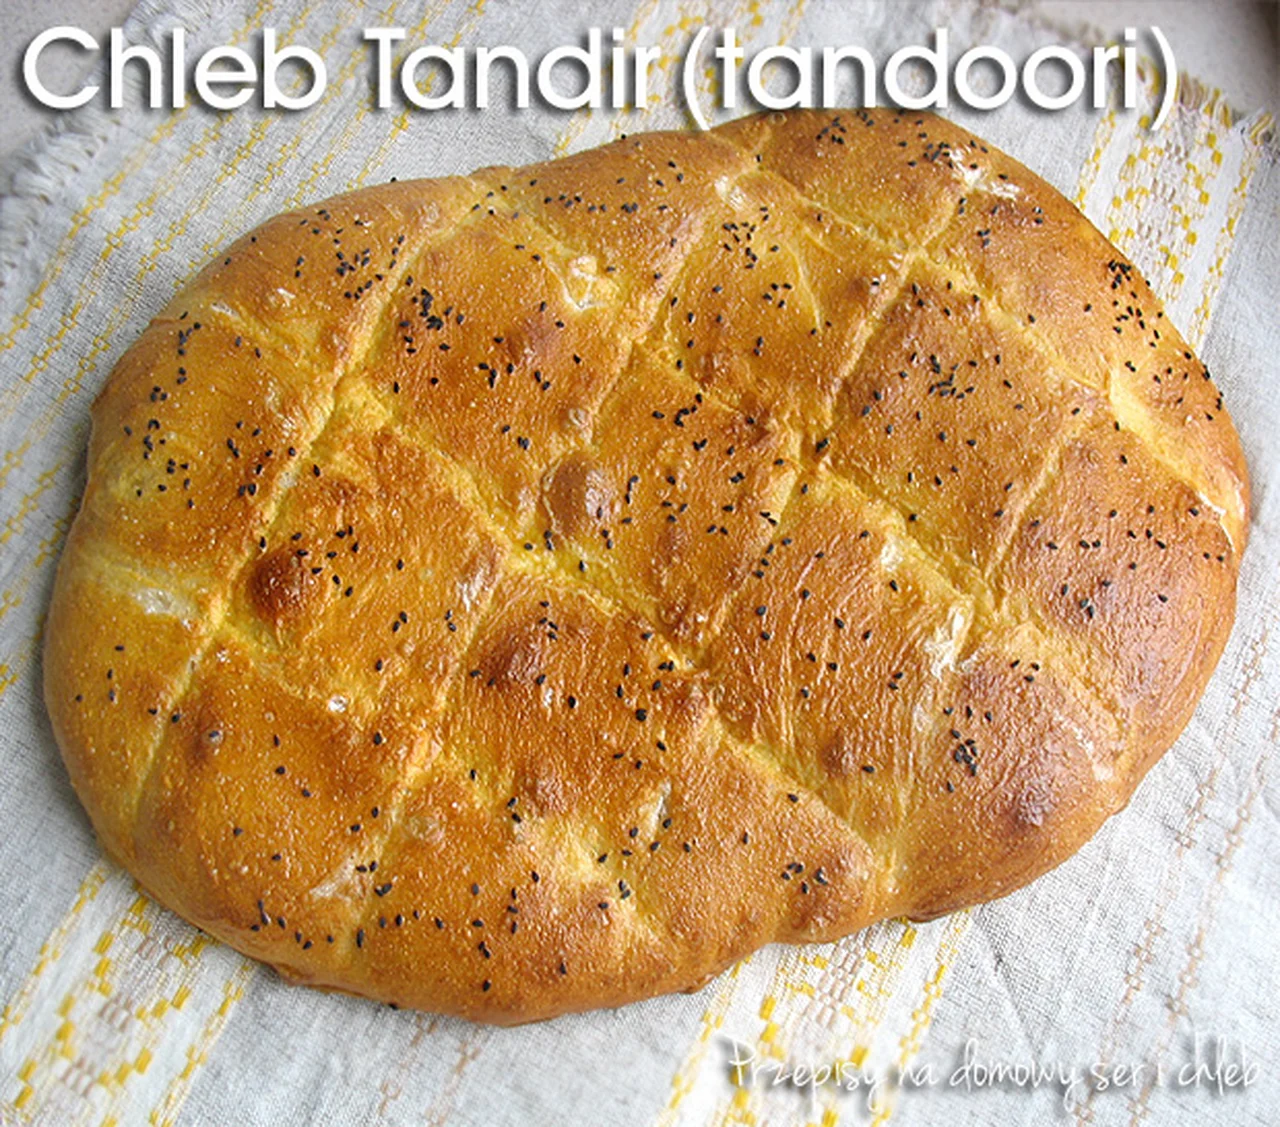 Chleb Tandir (tandoori) - Azerbejdżan